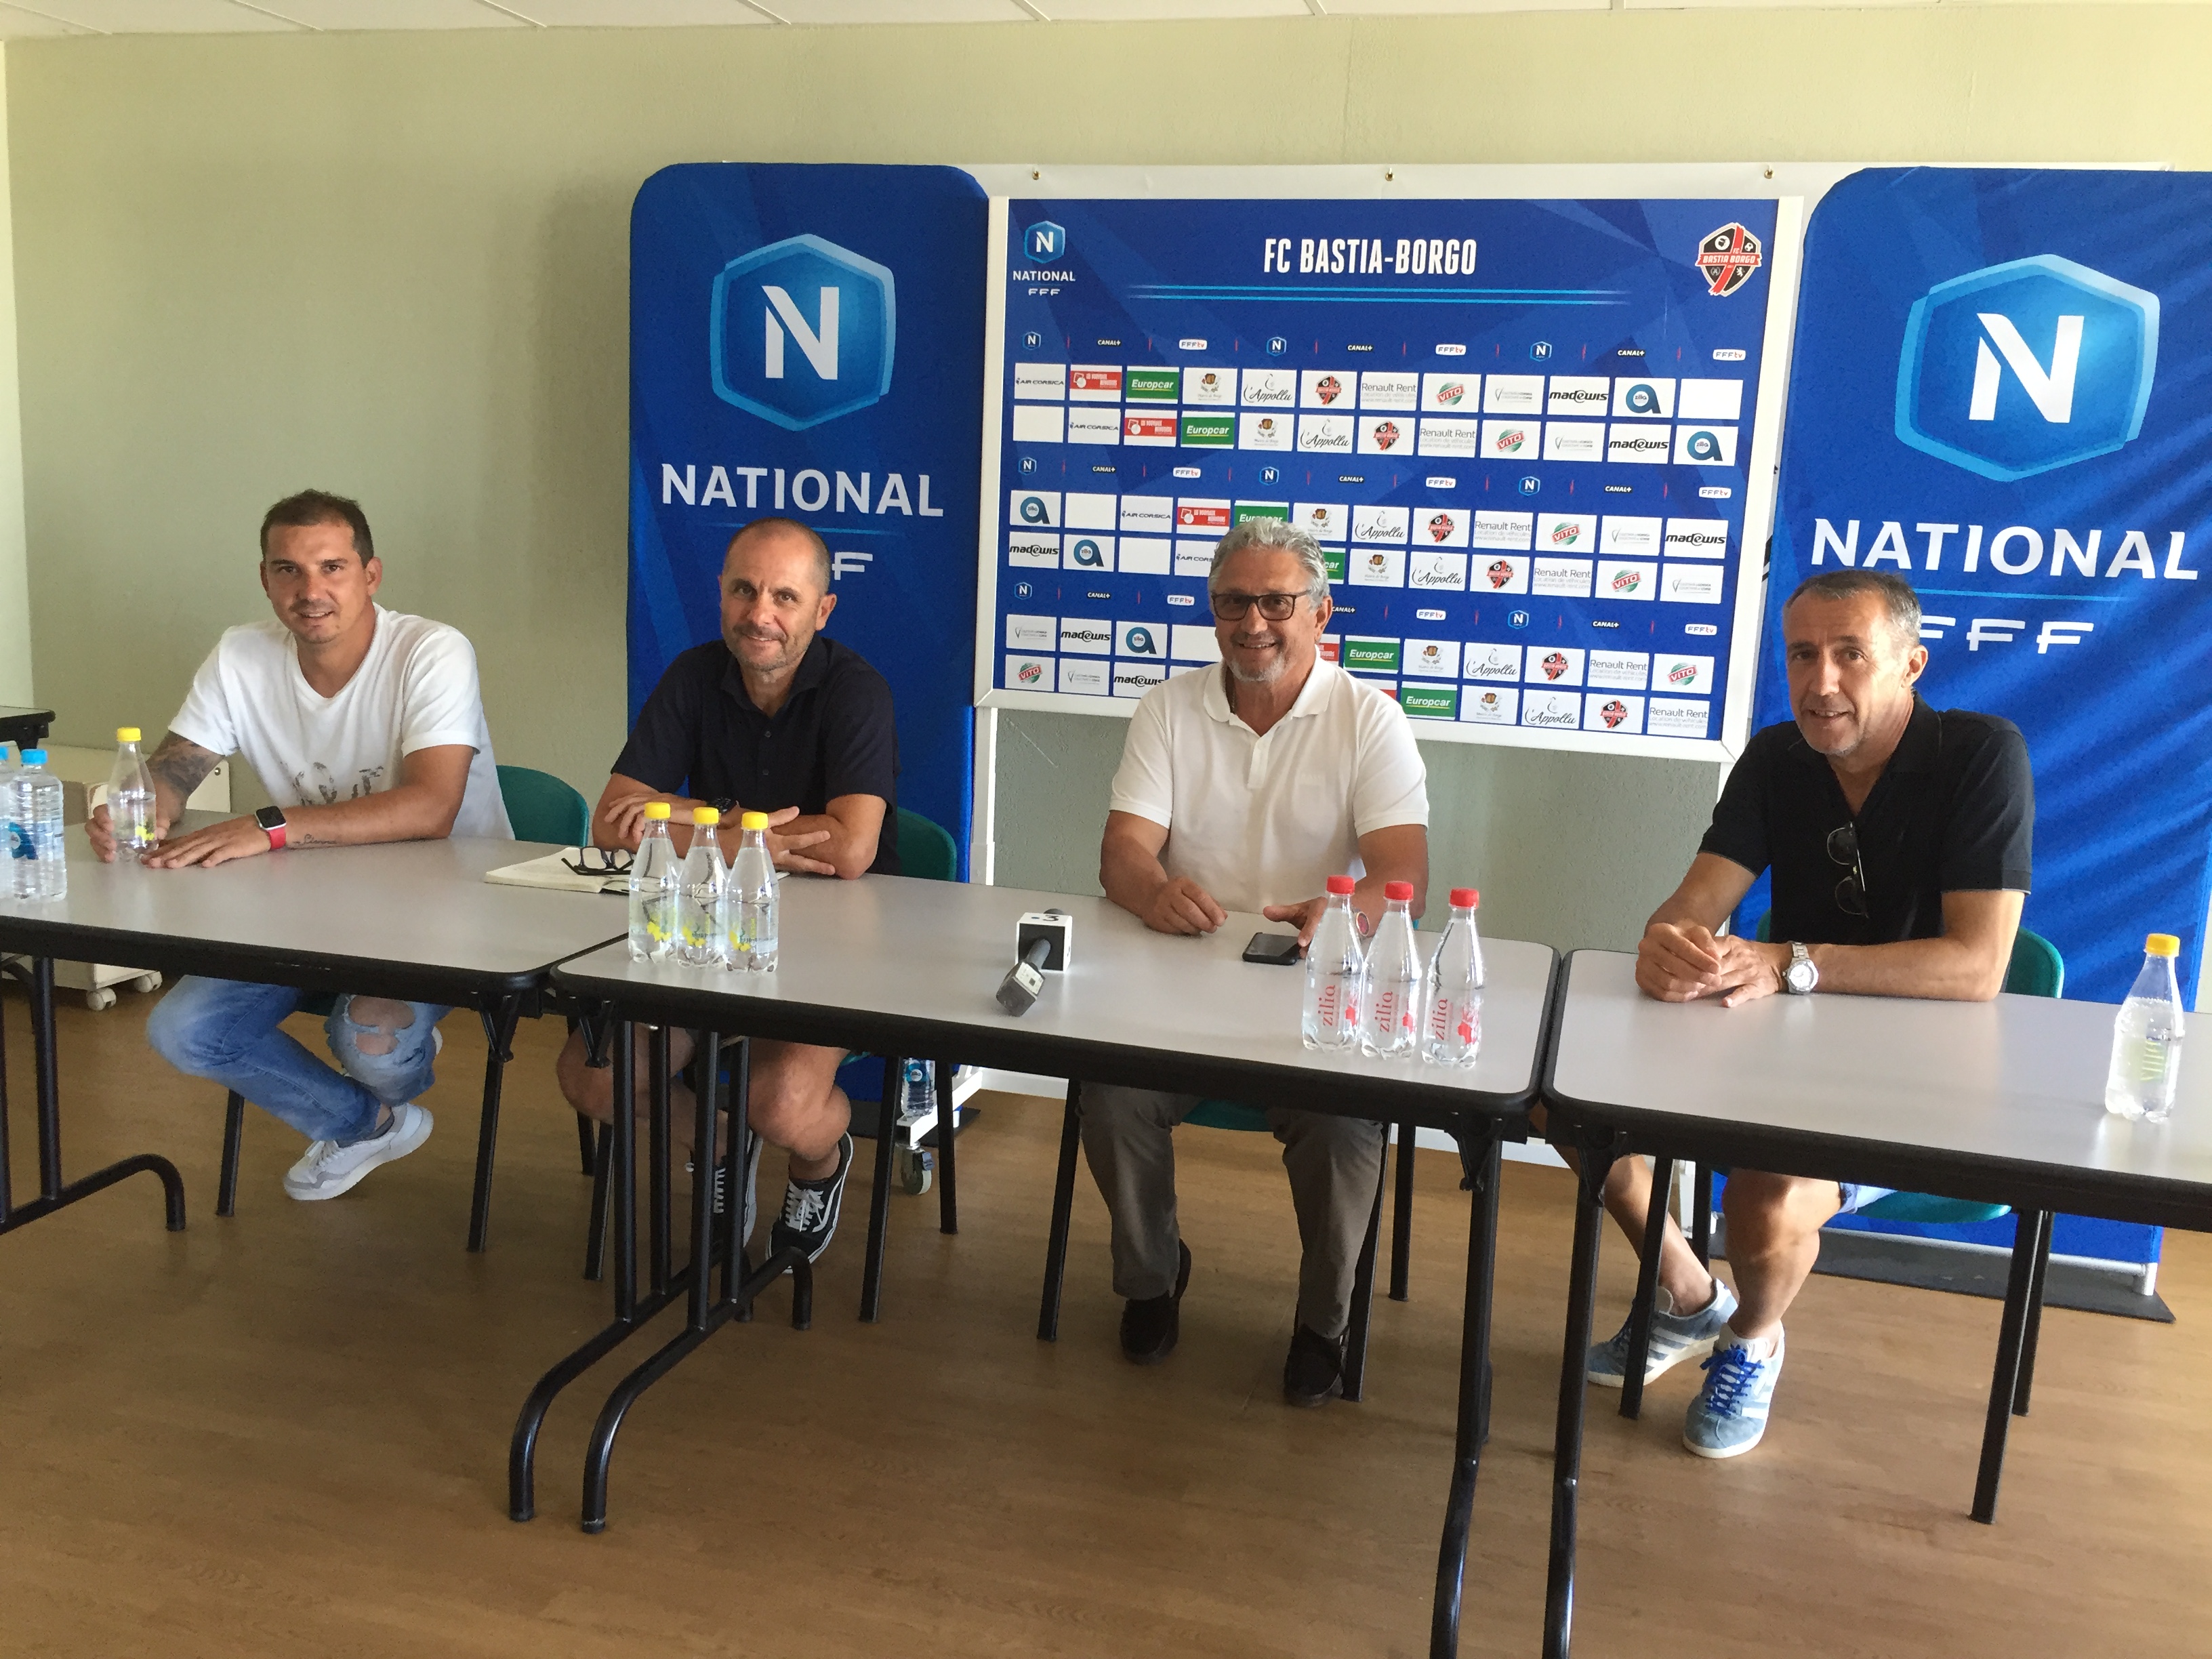 Les dirigeants et l'entraineur du FC Bastia-Borgo ont présenté la saison 2020/2021